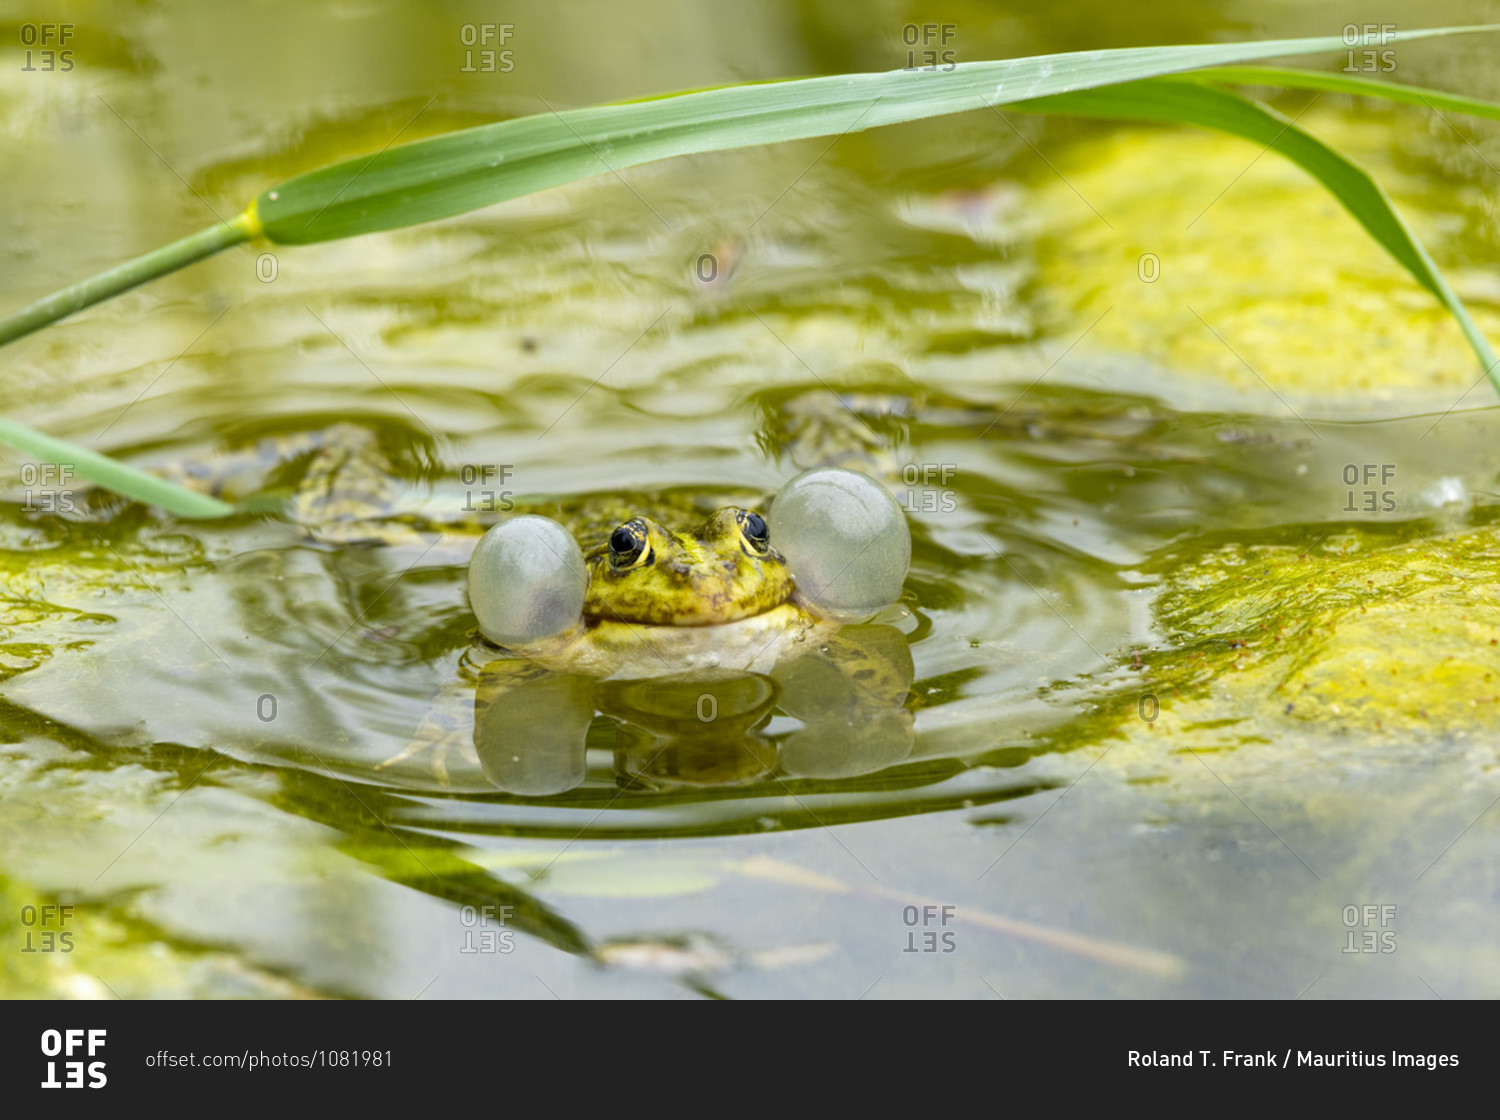 Pond frog (Pelophylax kl. Esculentus, Pelophylax esculentus, Rana esculenta) croaking.